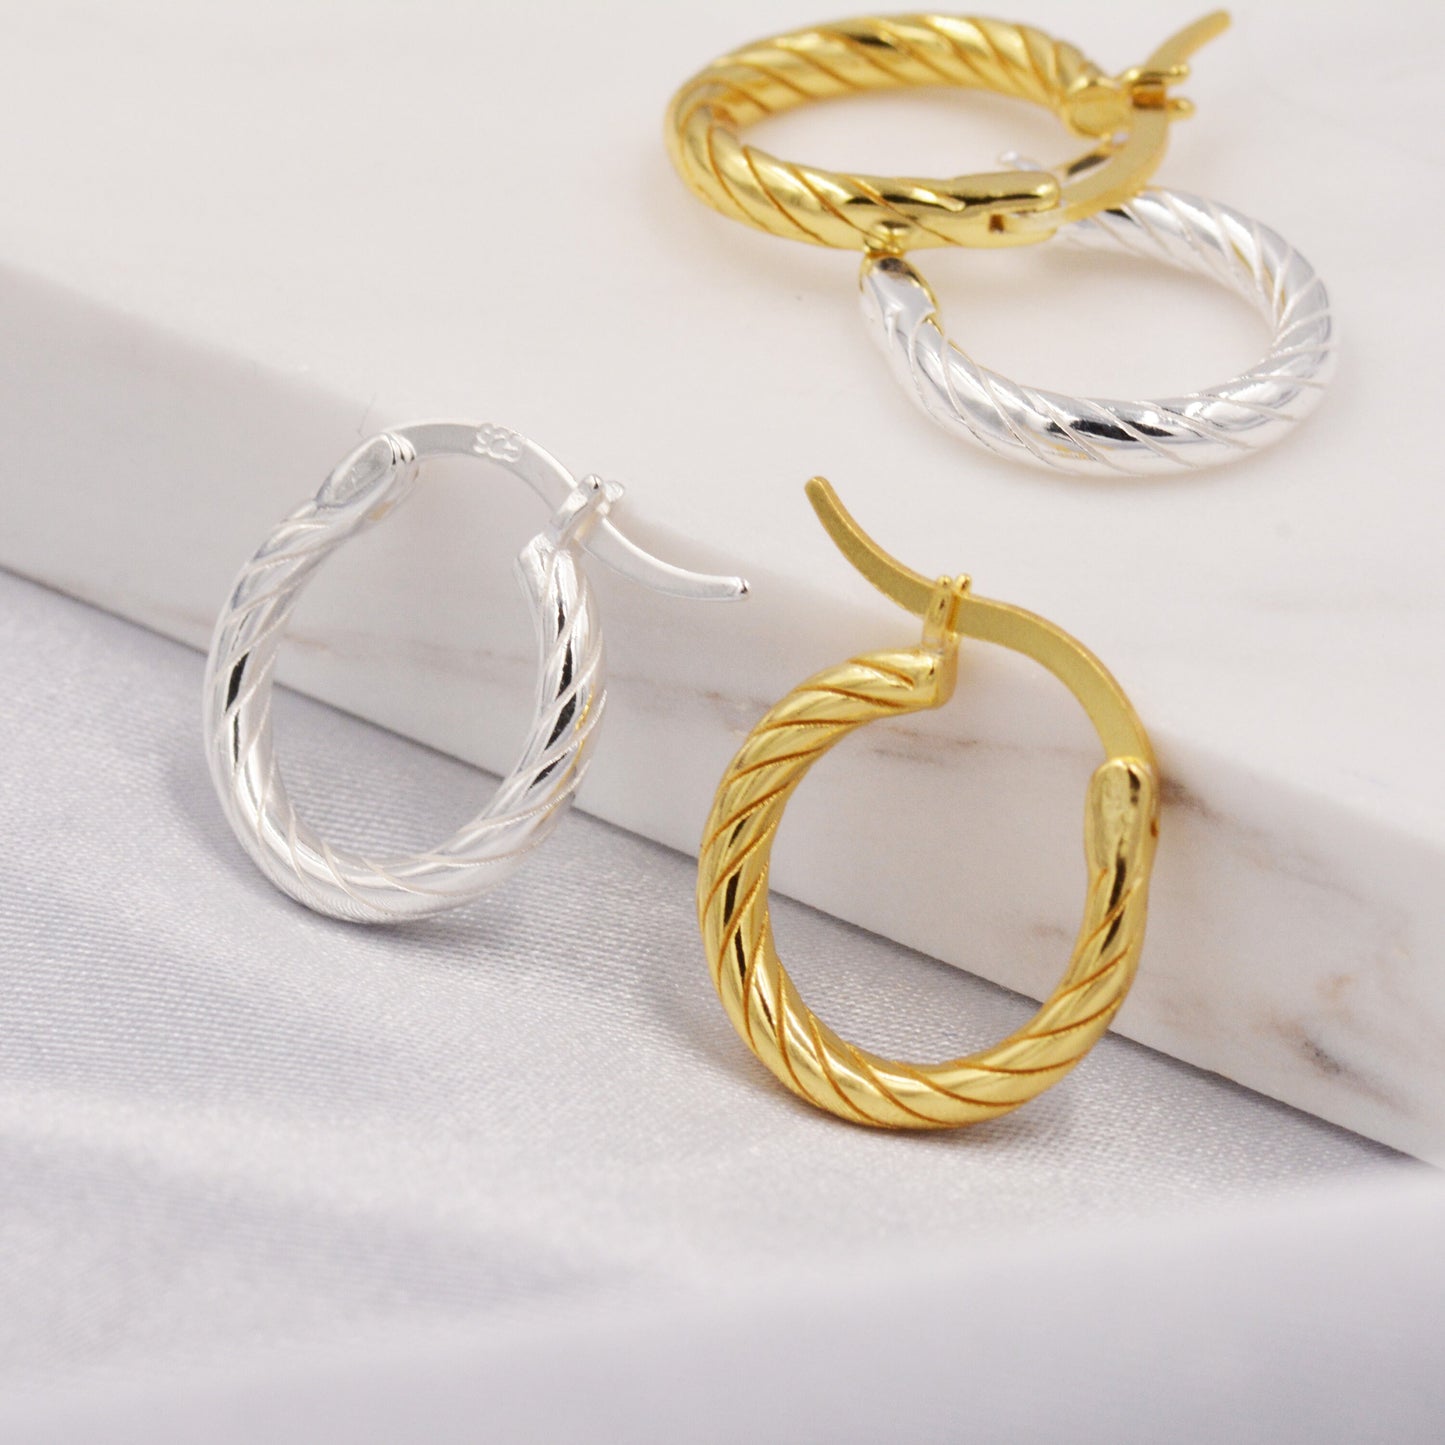 Rope Huggie Hoop in Sterling Silver, Braided Hoops Creole Earrings, Gold or Silver, 10mm Twist Hoop Earrings, Minimalist Hoops